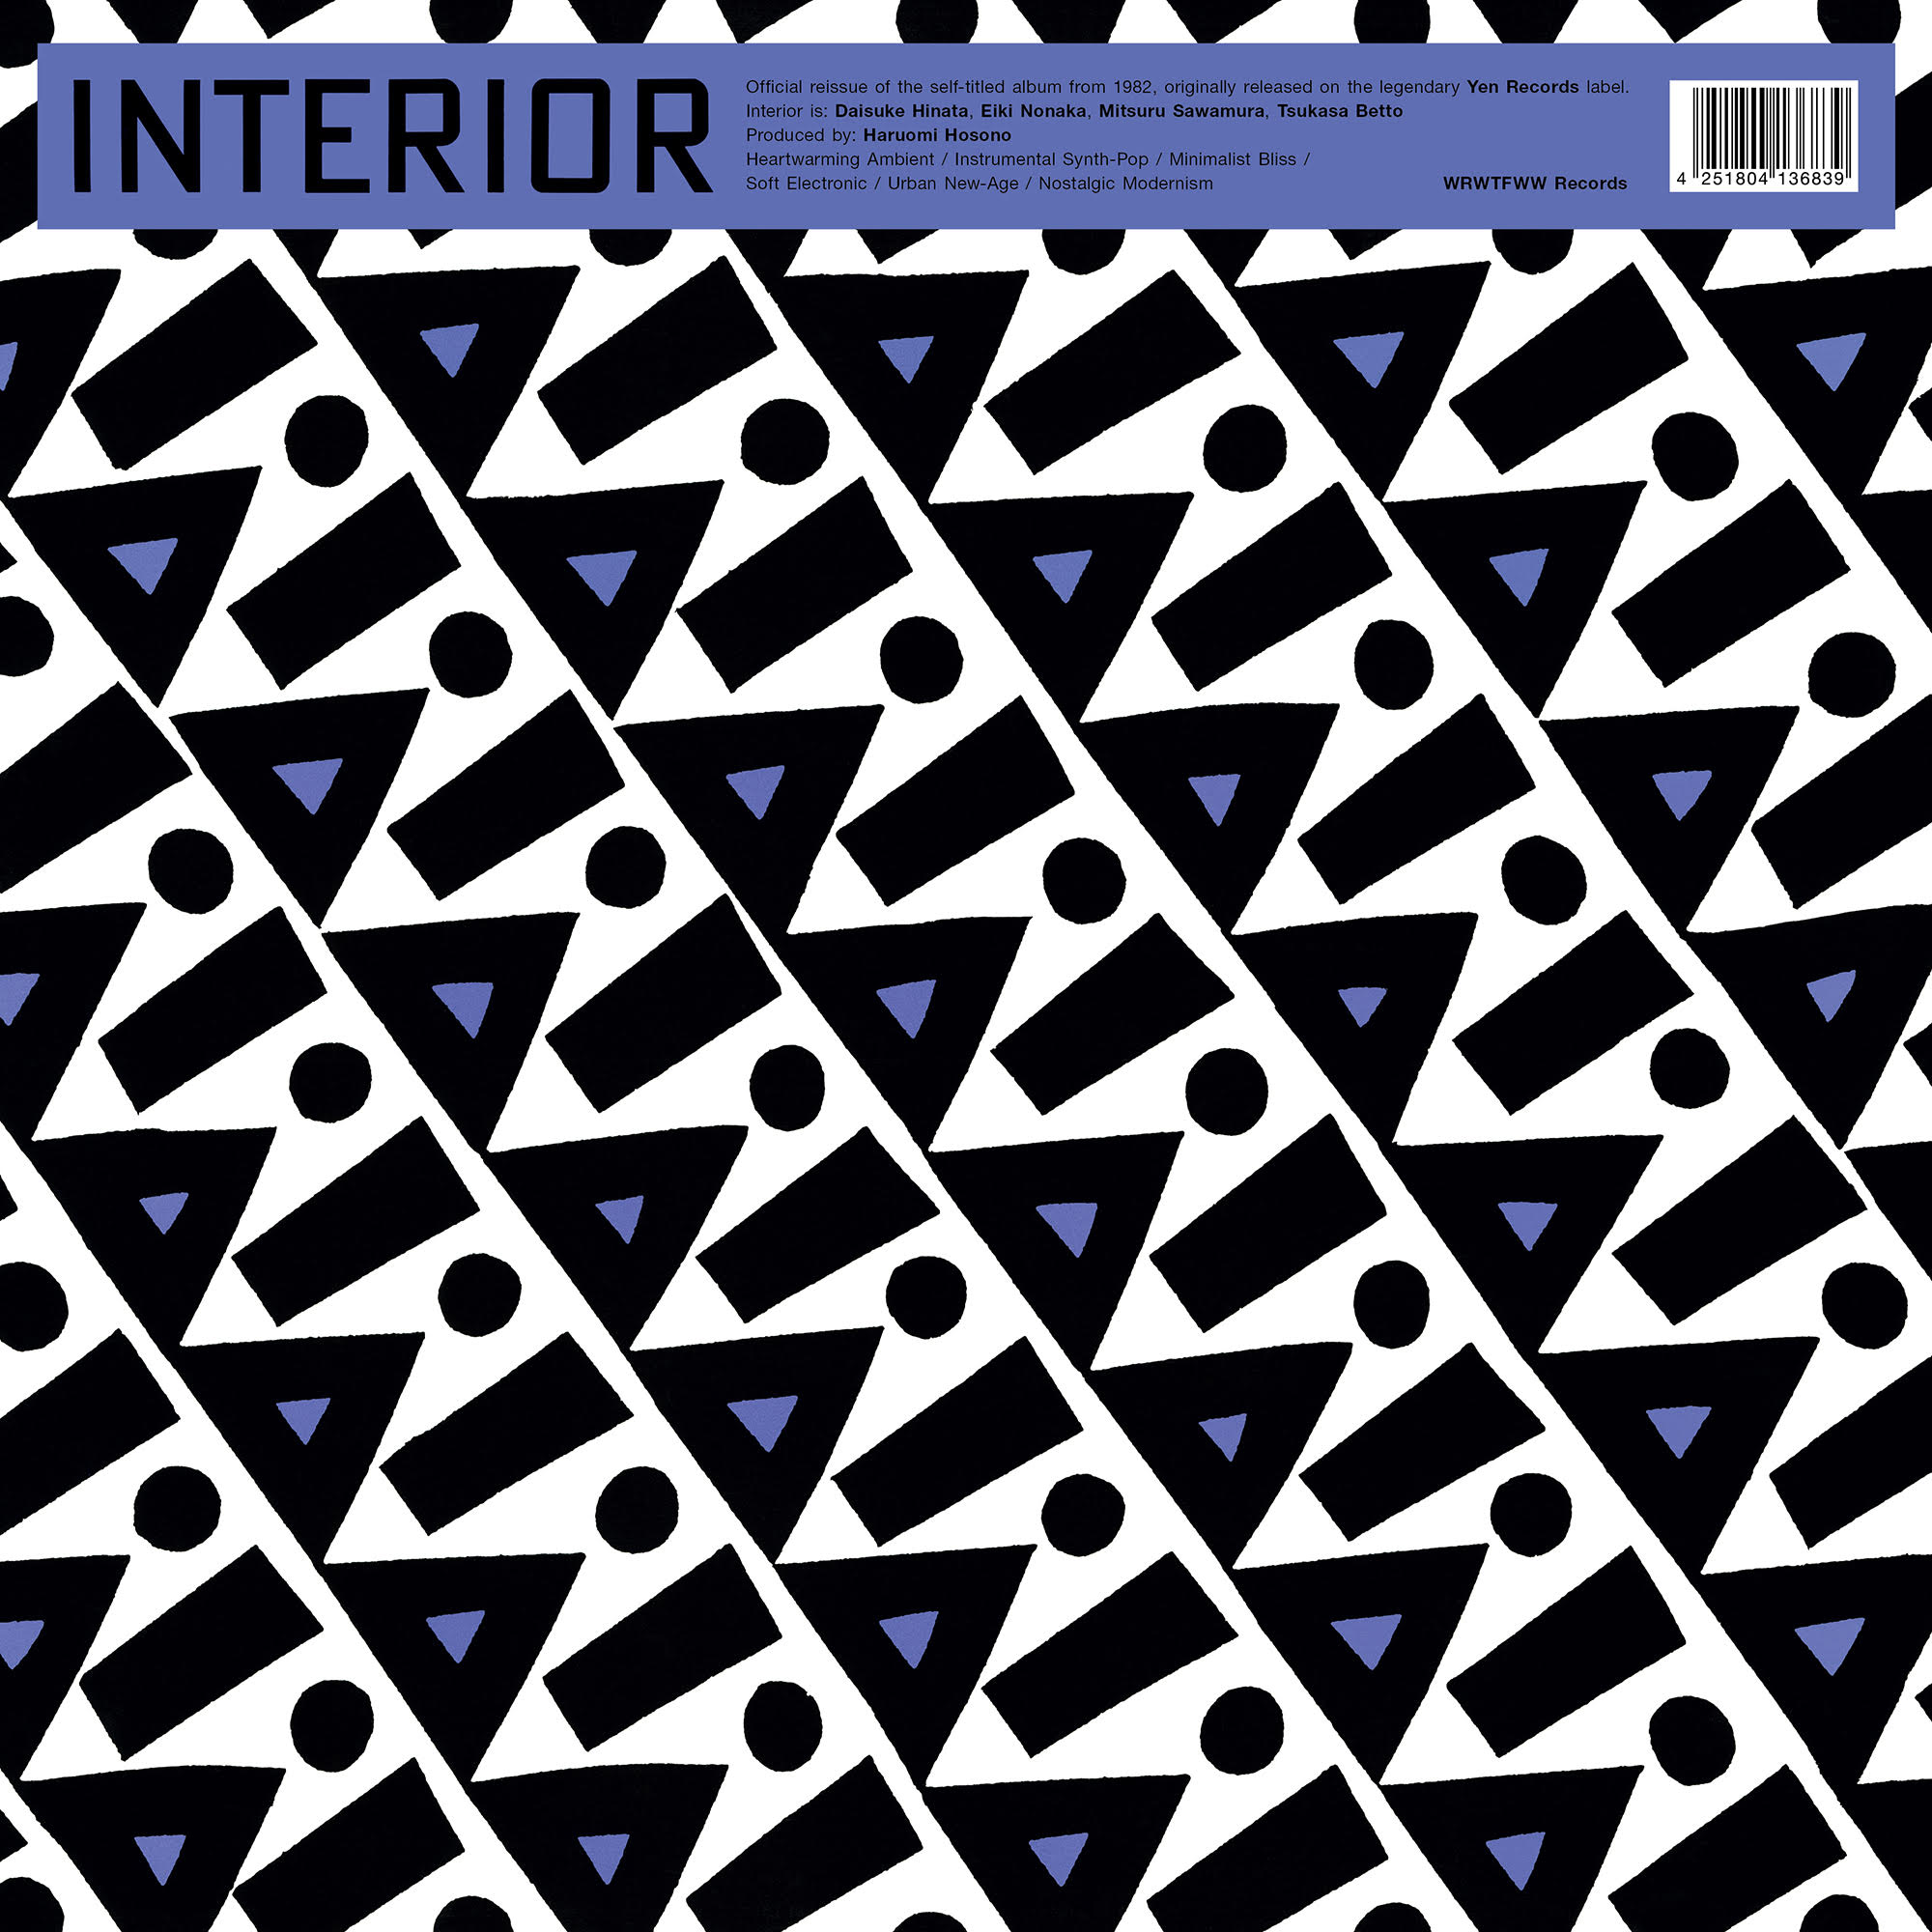 Interior - Interior : LP